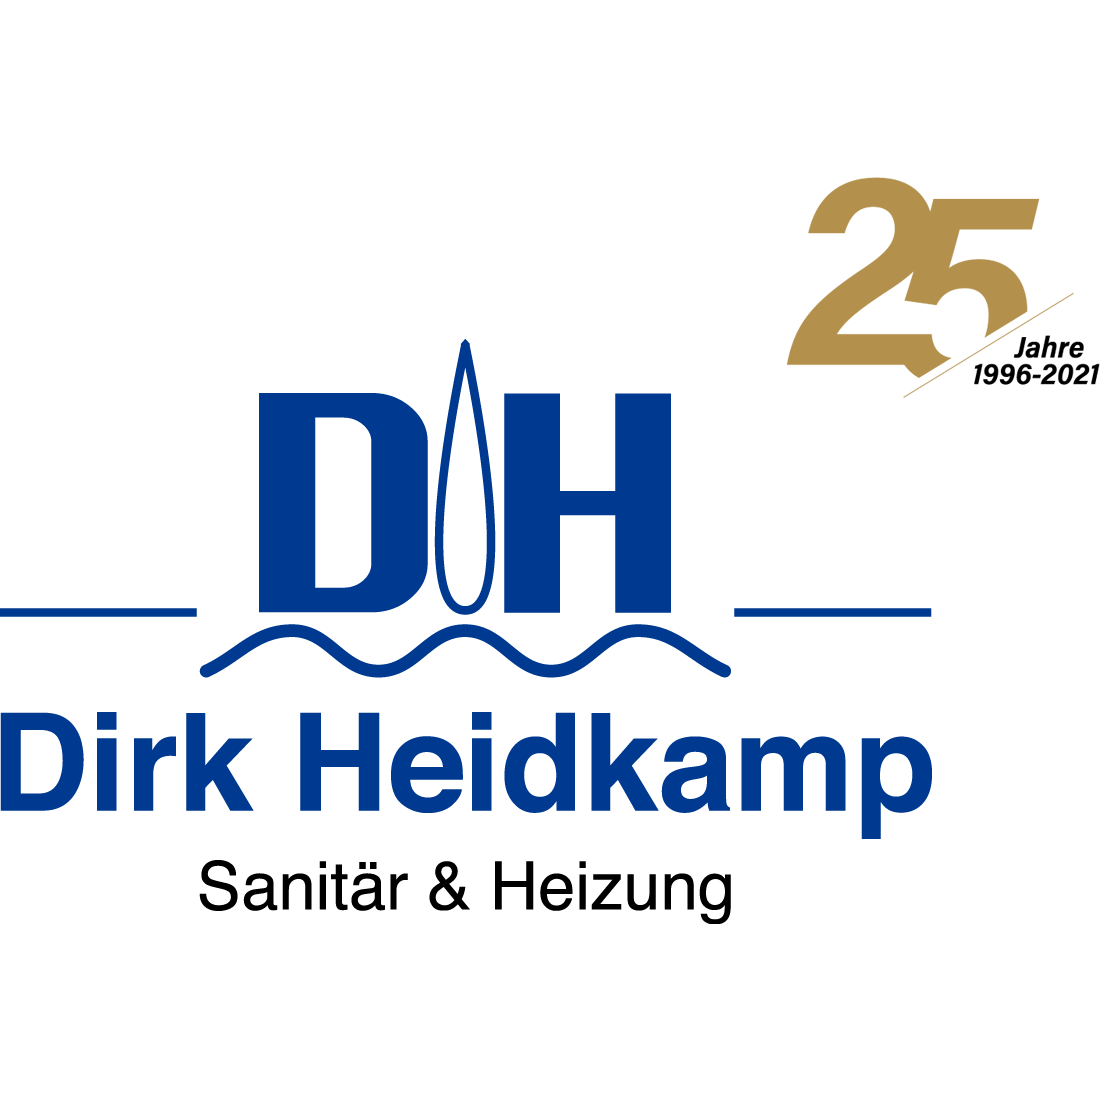 Dirk Heidkamp Sanitär & Heizung Logo